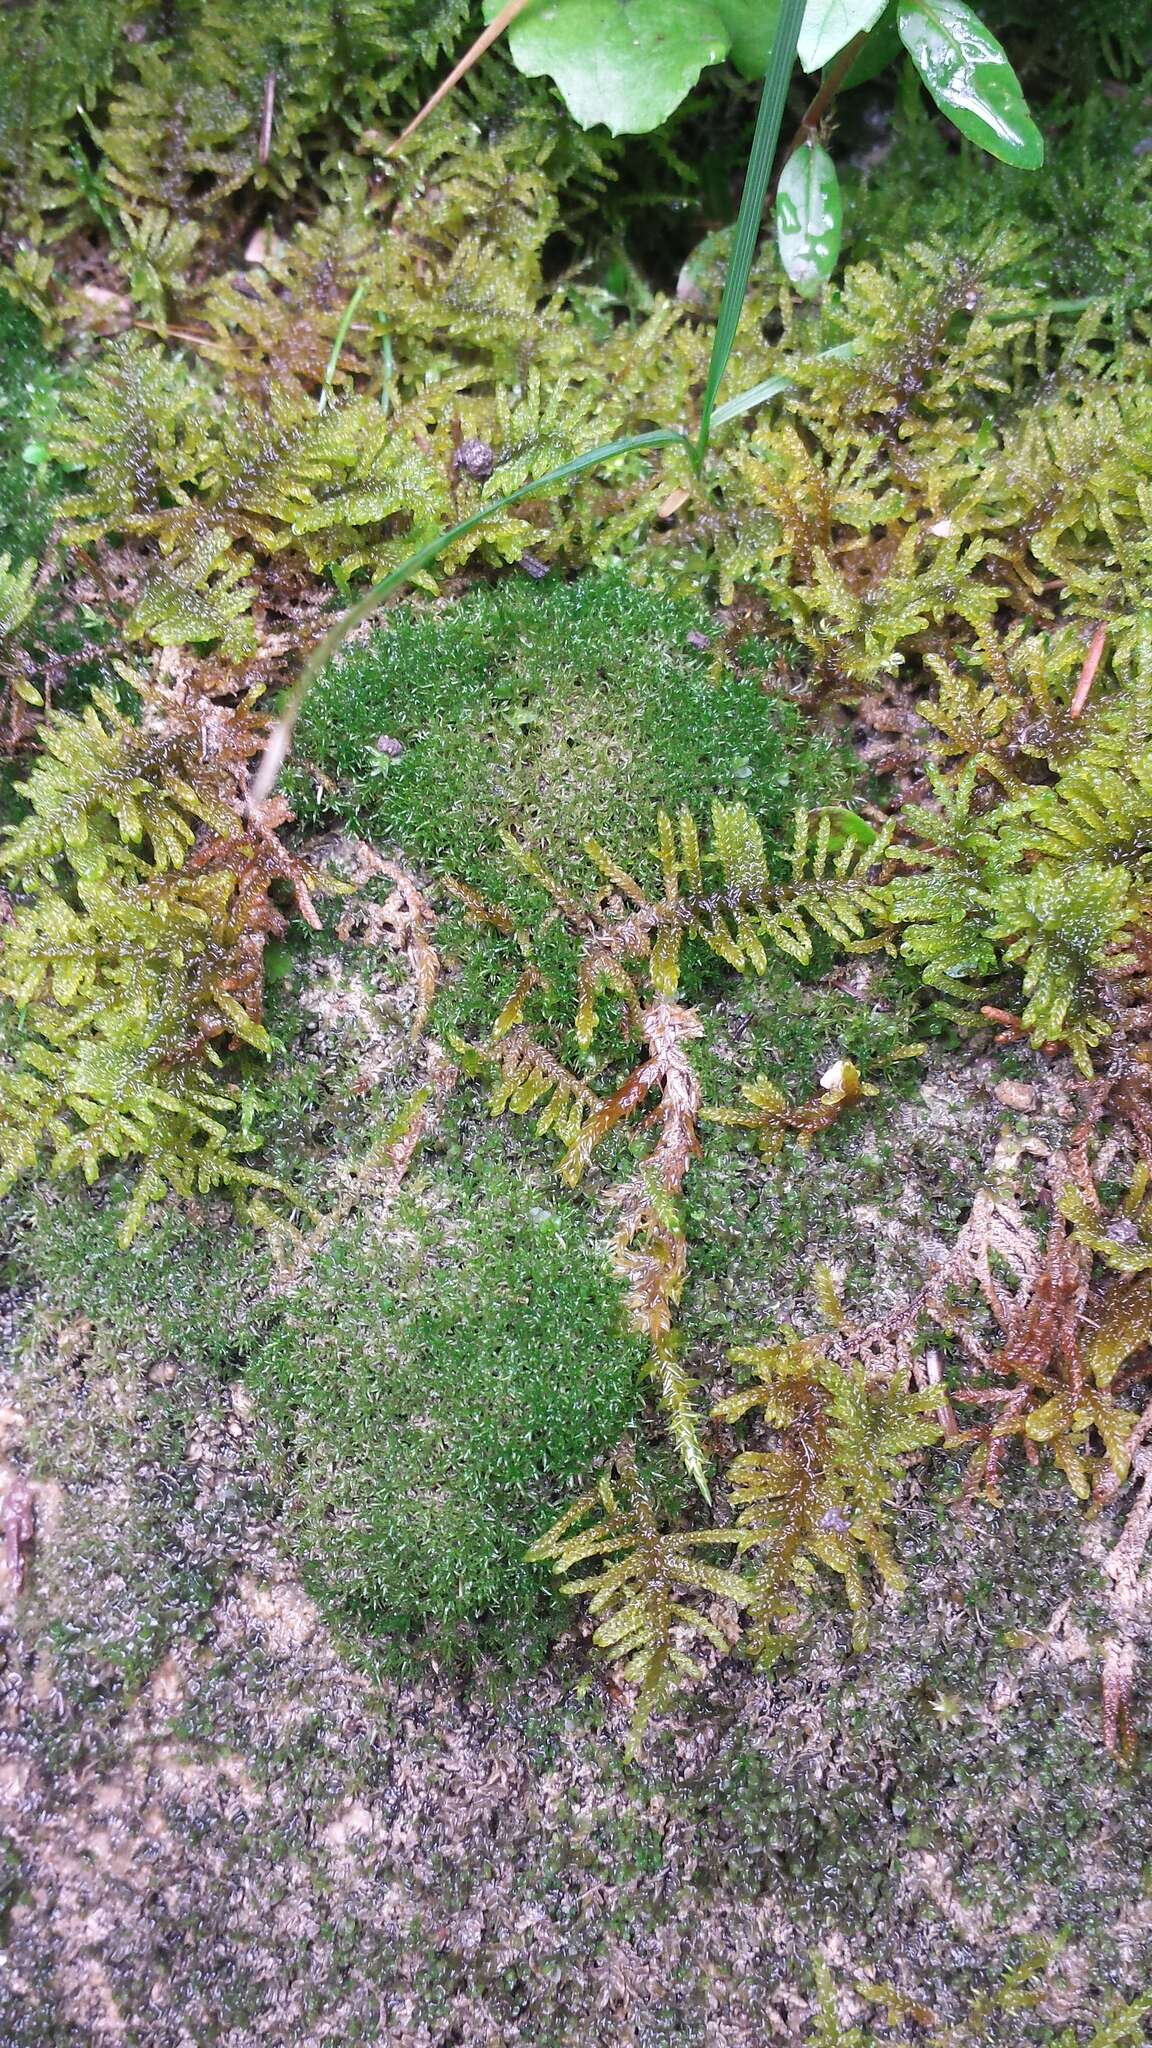 Image of eucladium moss